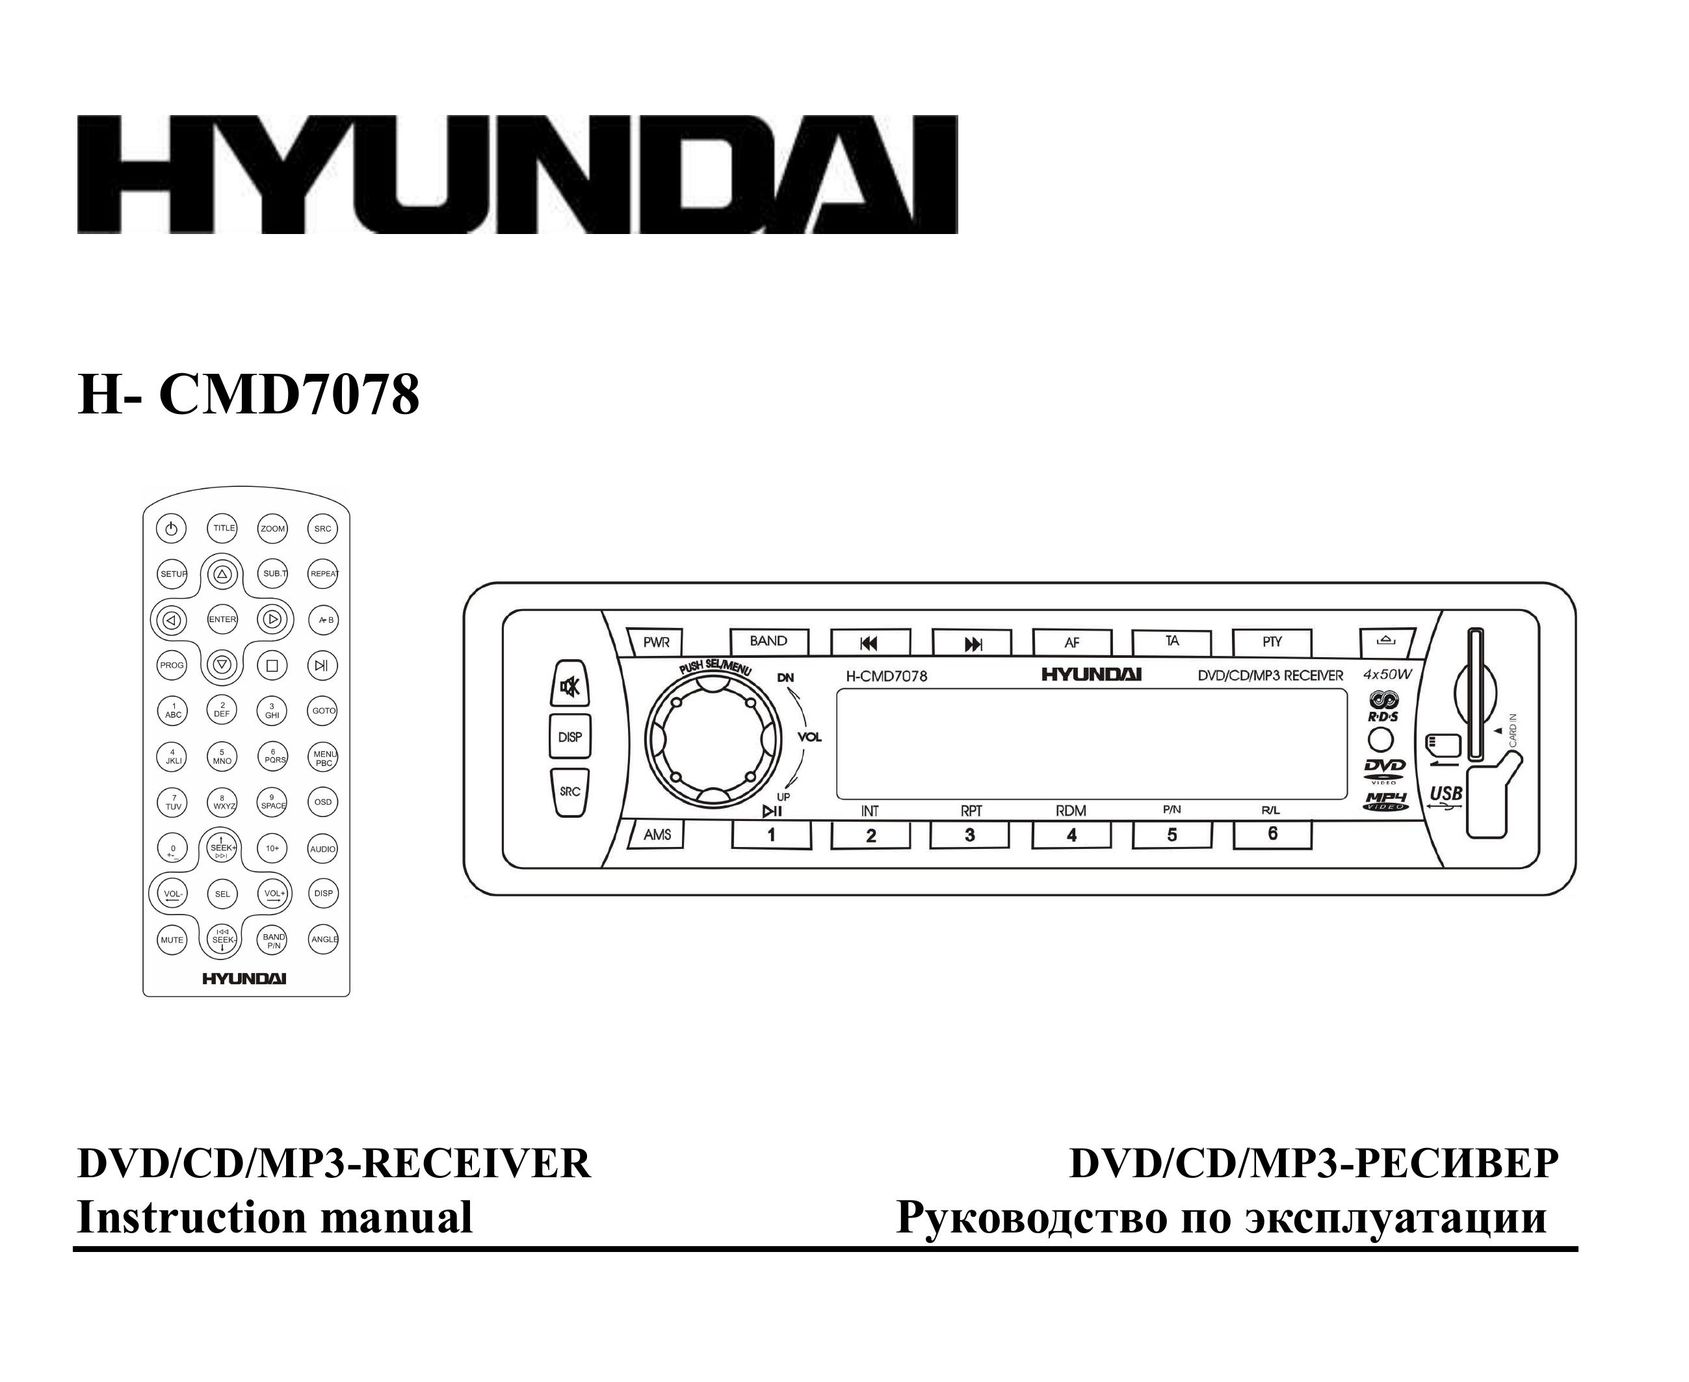 Hyundai IT H- CMD7078 DVD Player User Manual